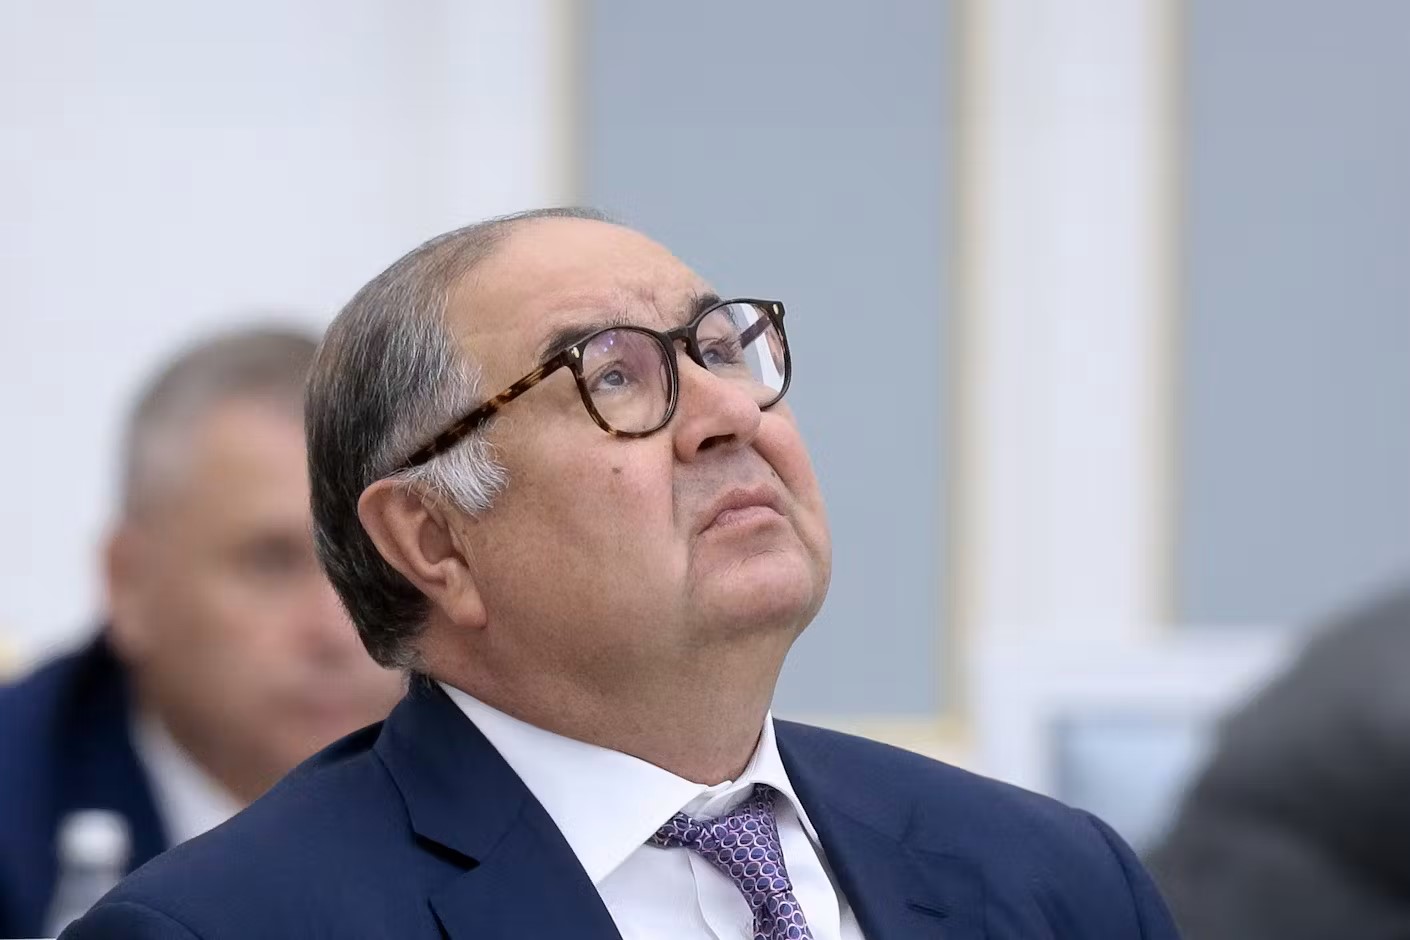 Oligarch Alisher Usmanov